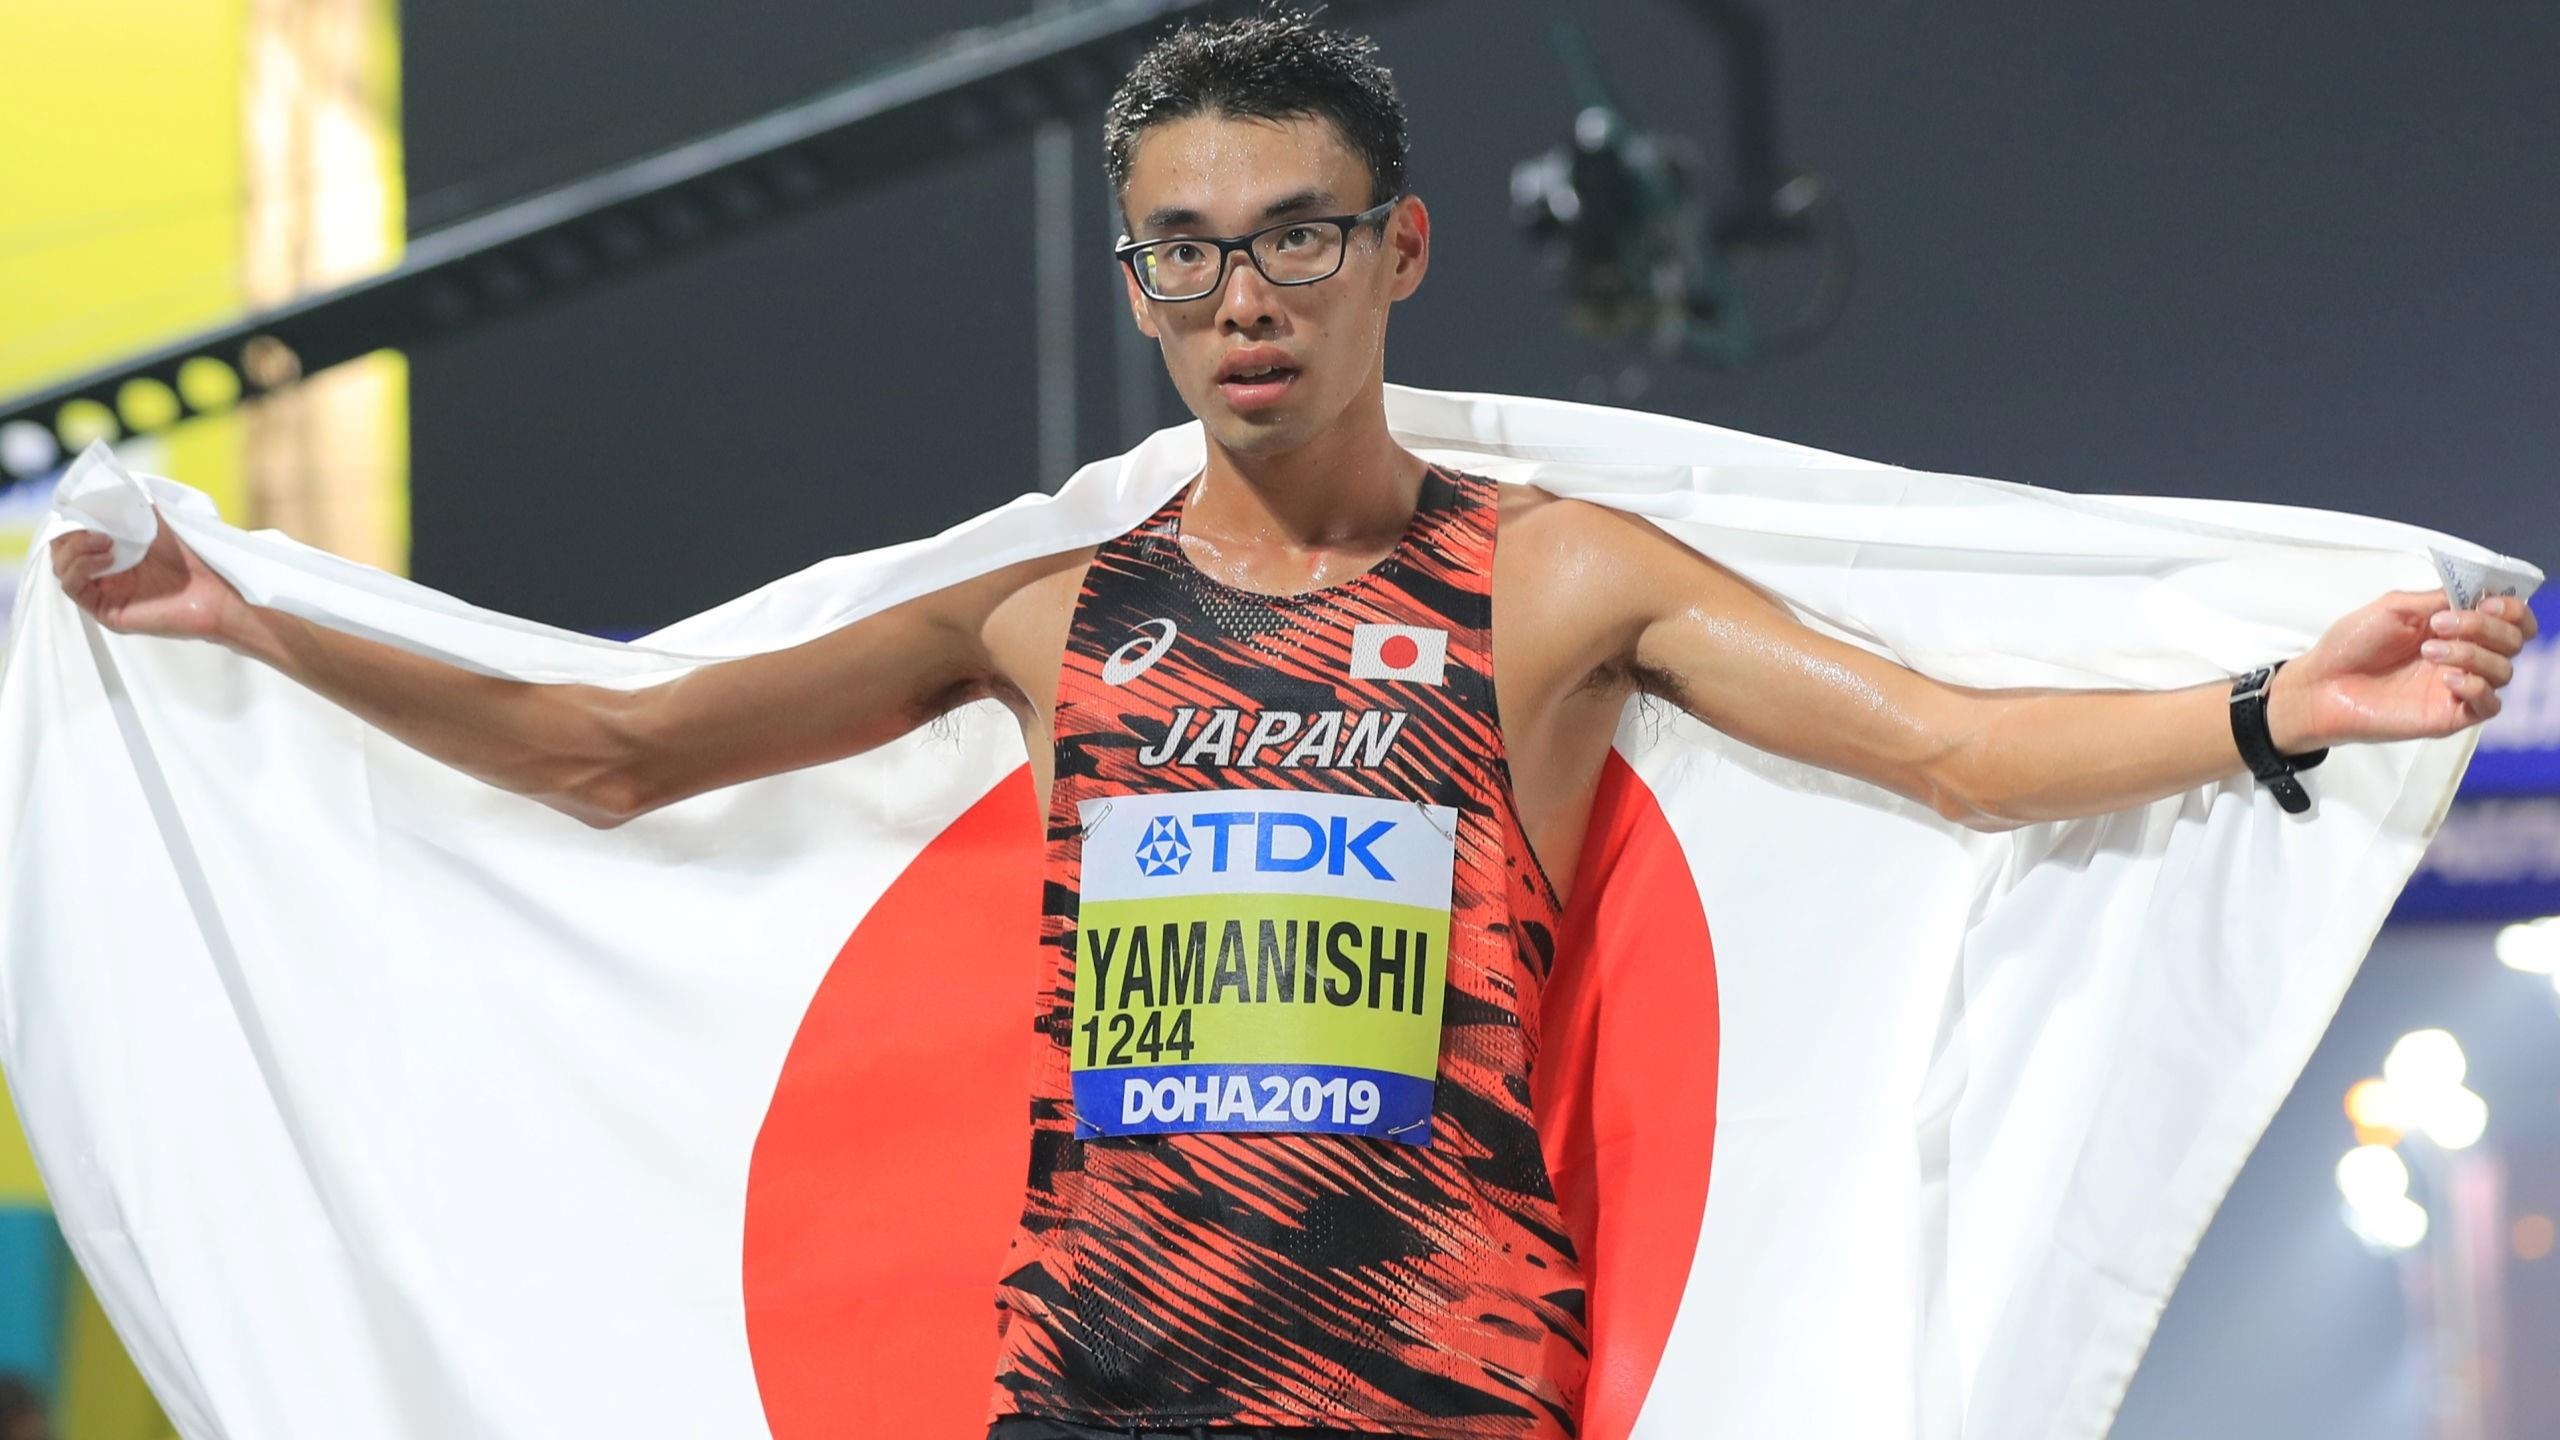 Toshikazu Yamanishi, Sports personality, Inspirational figure, Unknown accomplishments, 2560x1440 HD Desktop